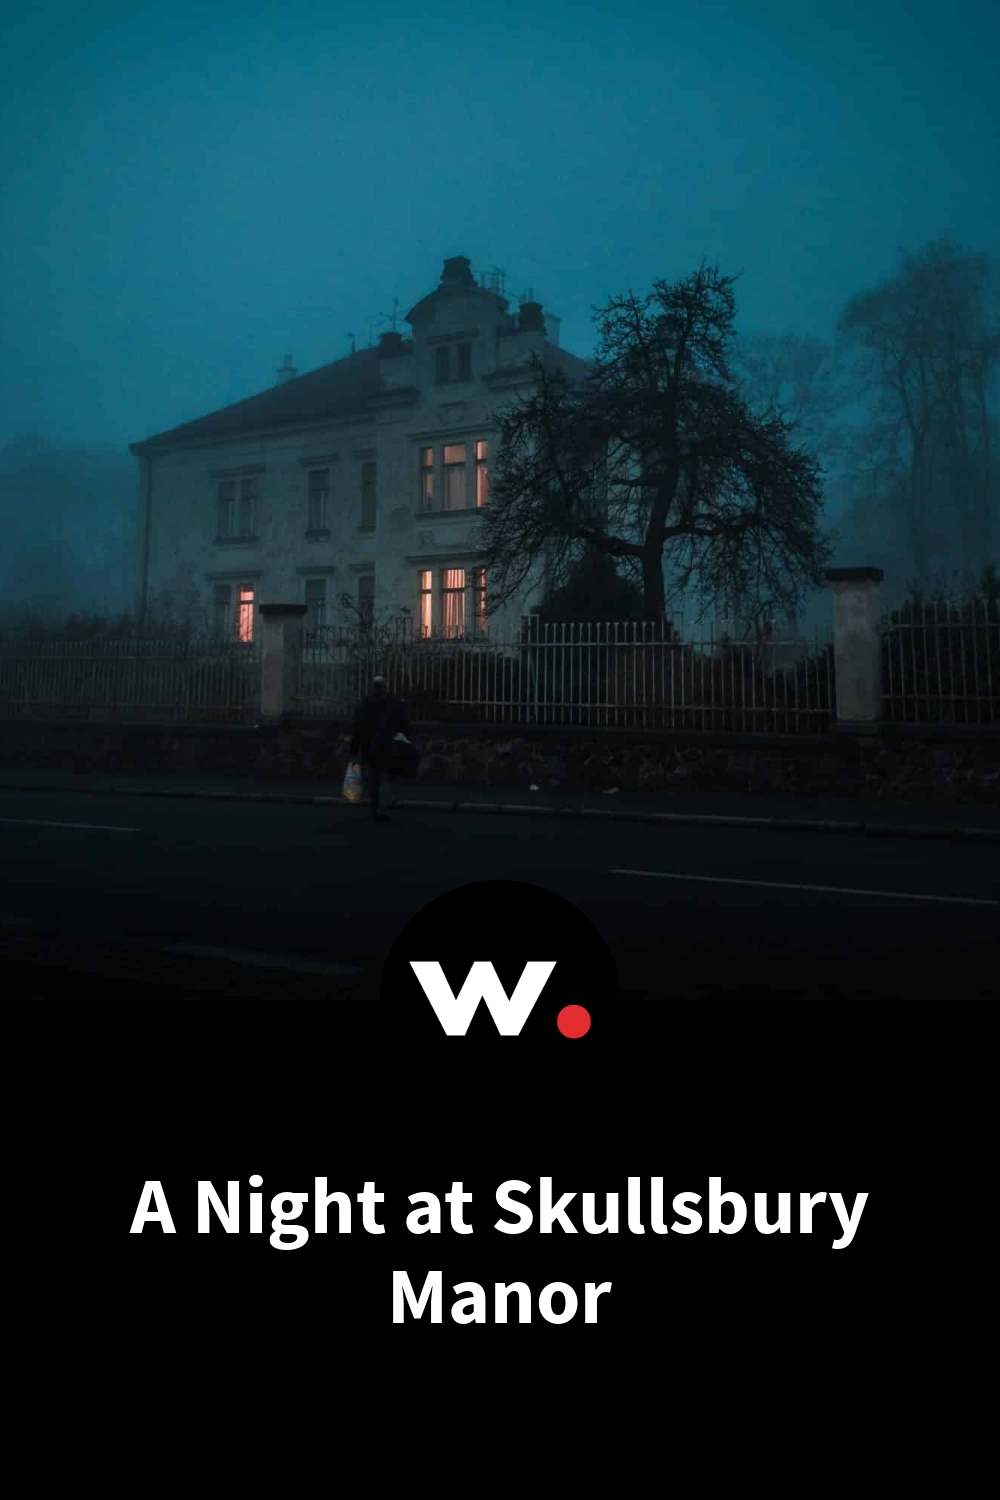 A Night at Skullsbury Manor